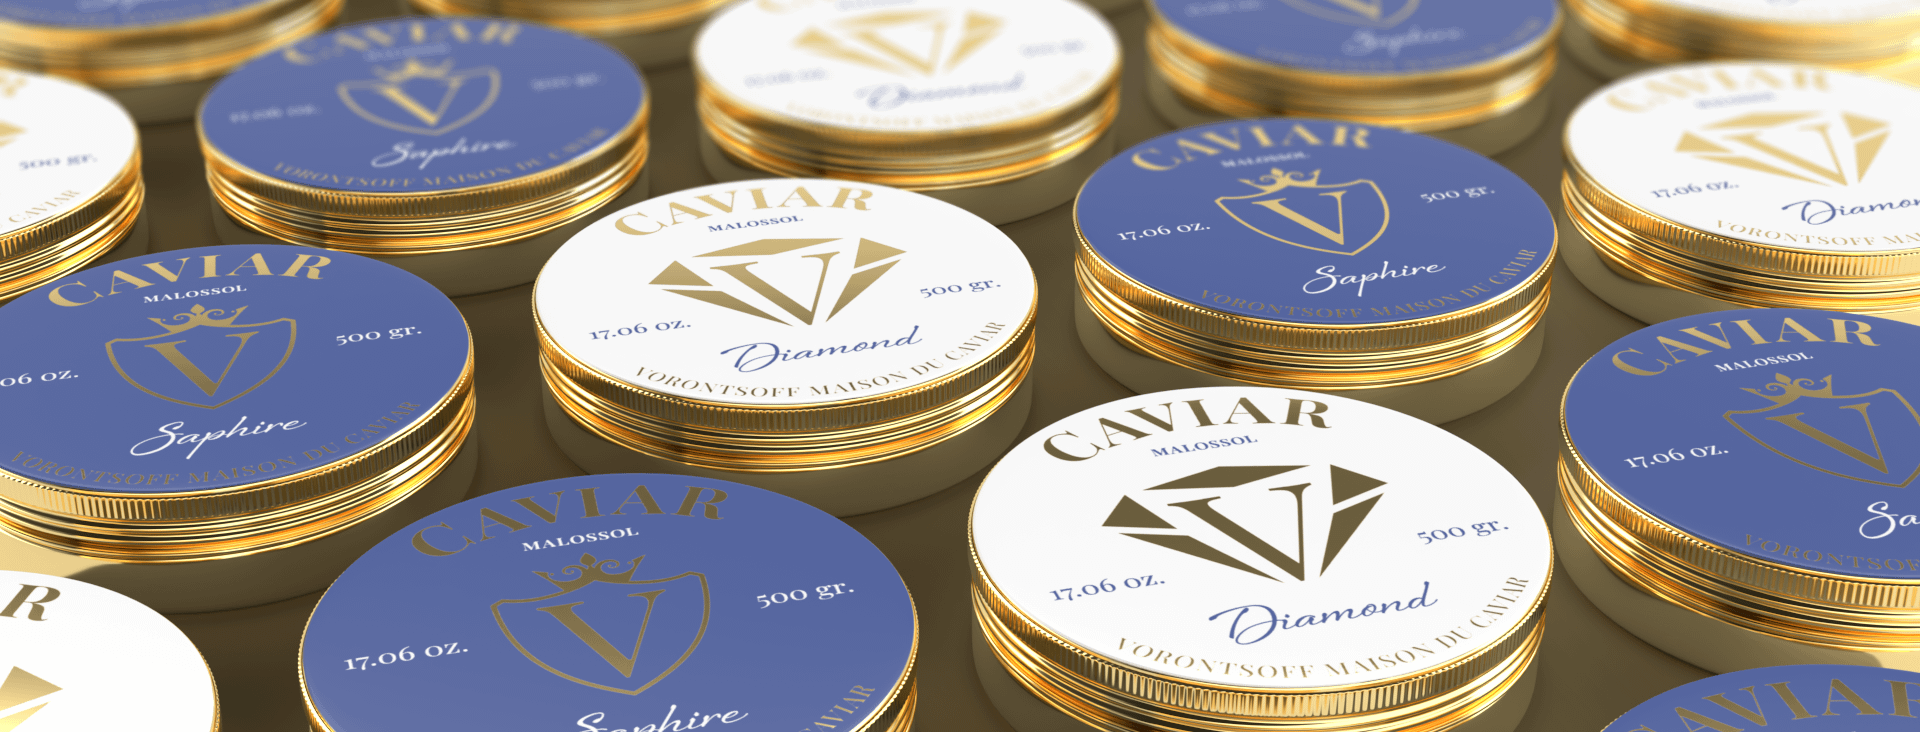 Vorontsoff: Diseño del paquete, “Maison Du Caviar”.